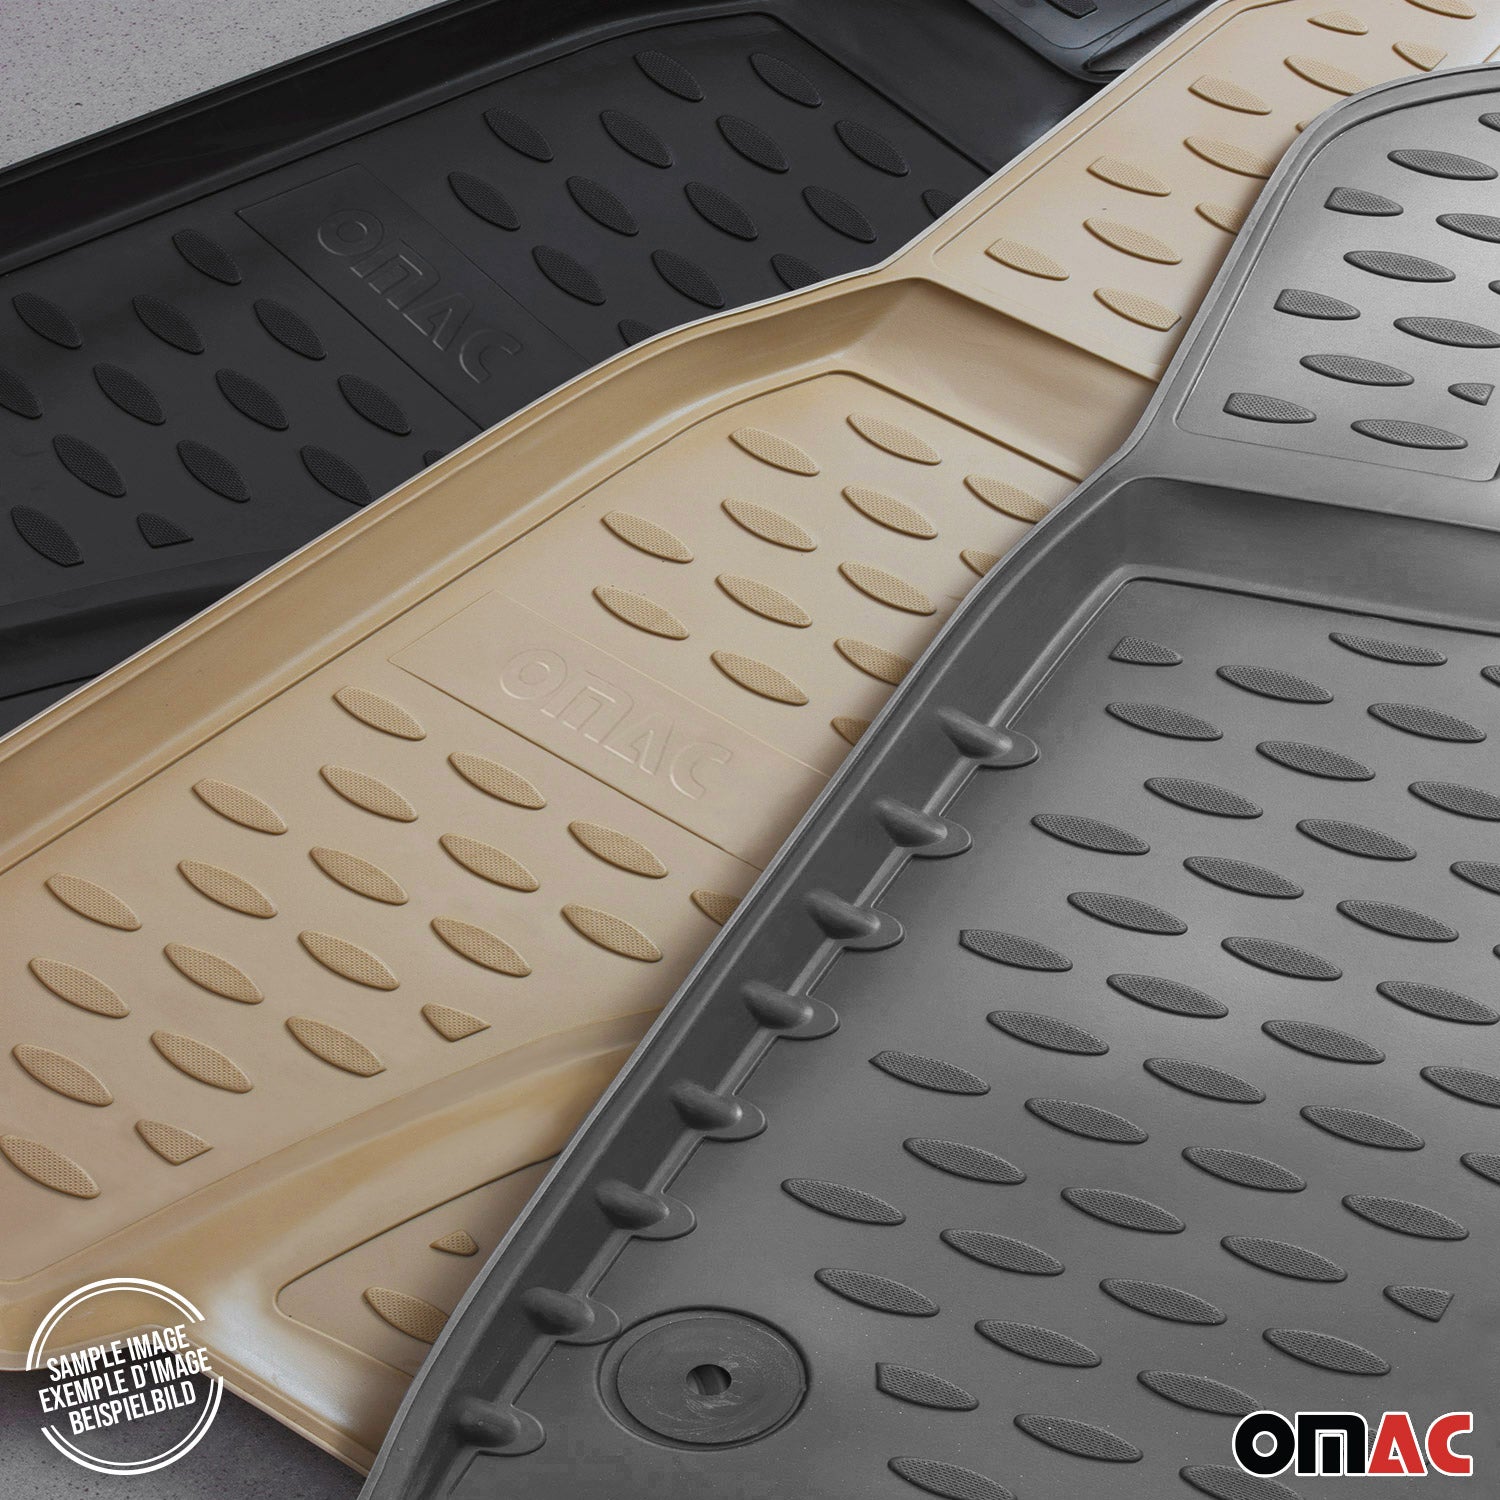 Fußmatten für Honda Jazz 2008-2015 3D Passform Hoher Rand Gummimatten Beige